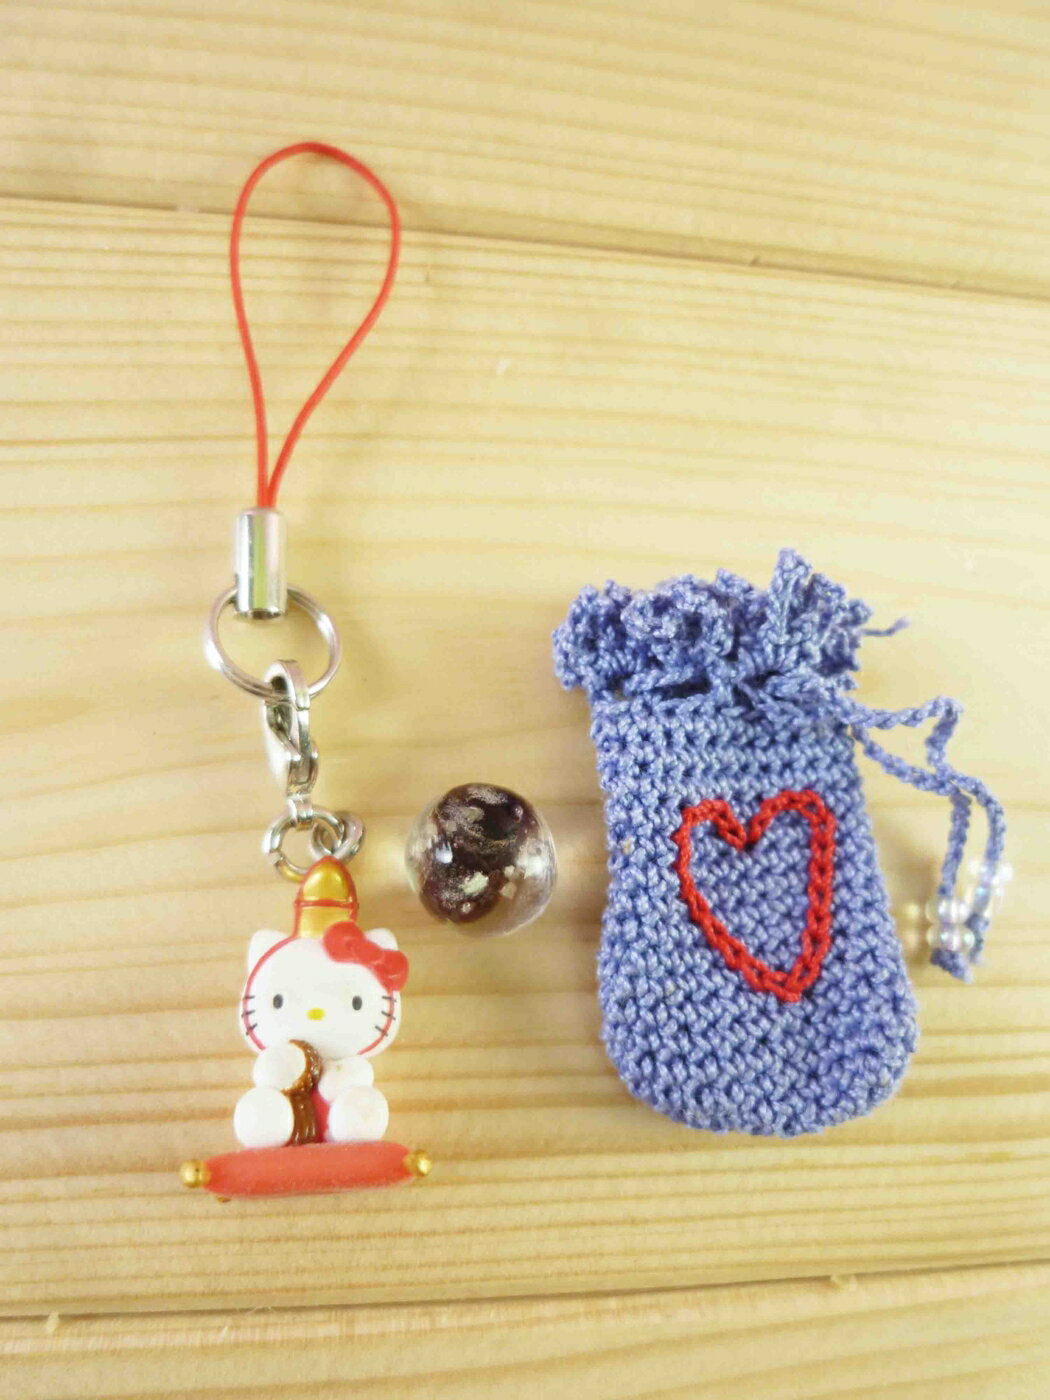 【震撼精品百貨】Hello Kitty 凱蒂貓 限定版手機吊飾-福袋寶石(紫) 震撼日式精品百貨